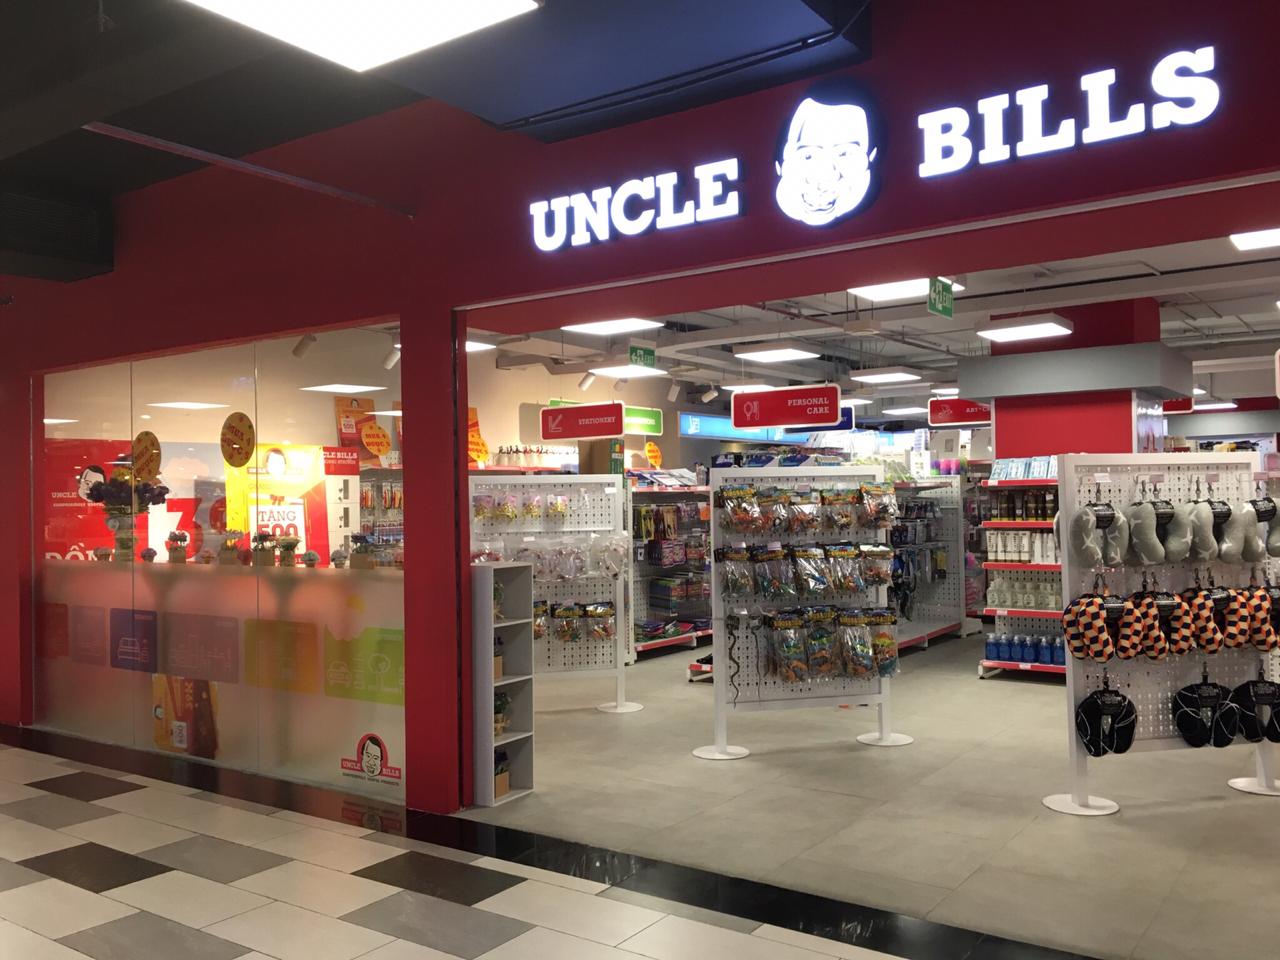 【Uncle Bills】がホーチミンのギガモールにオープン!! 